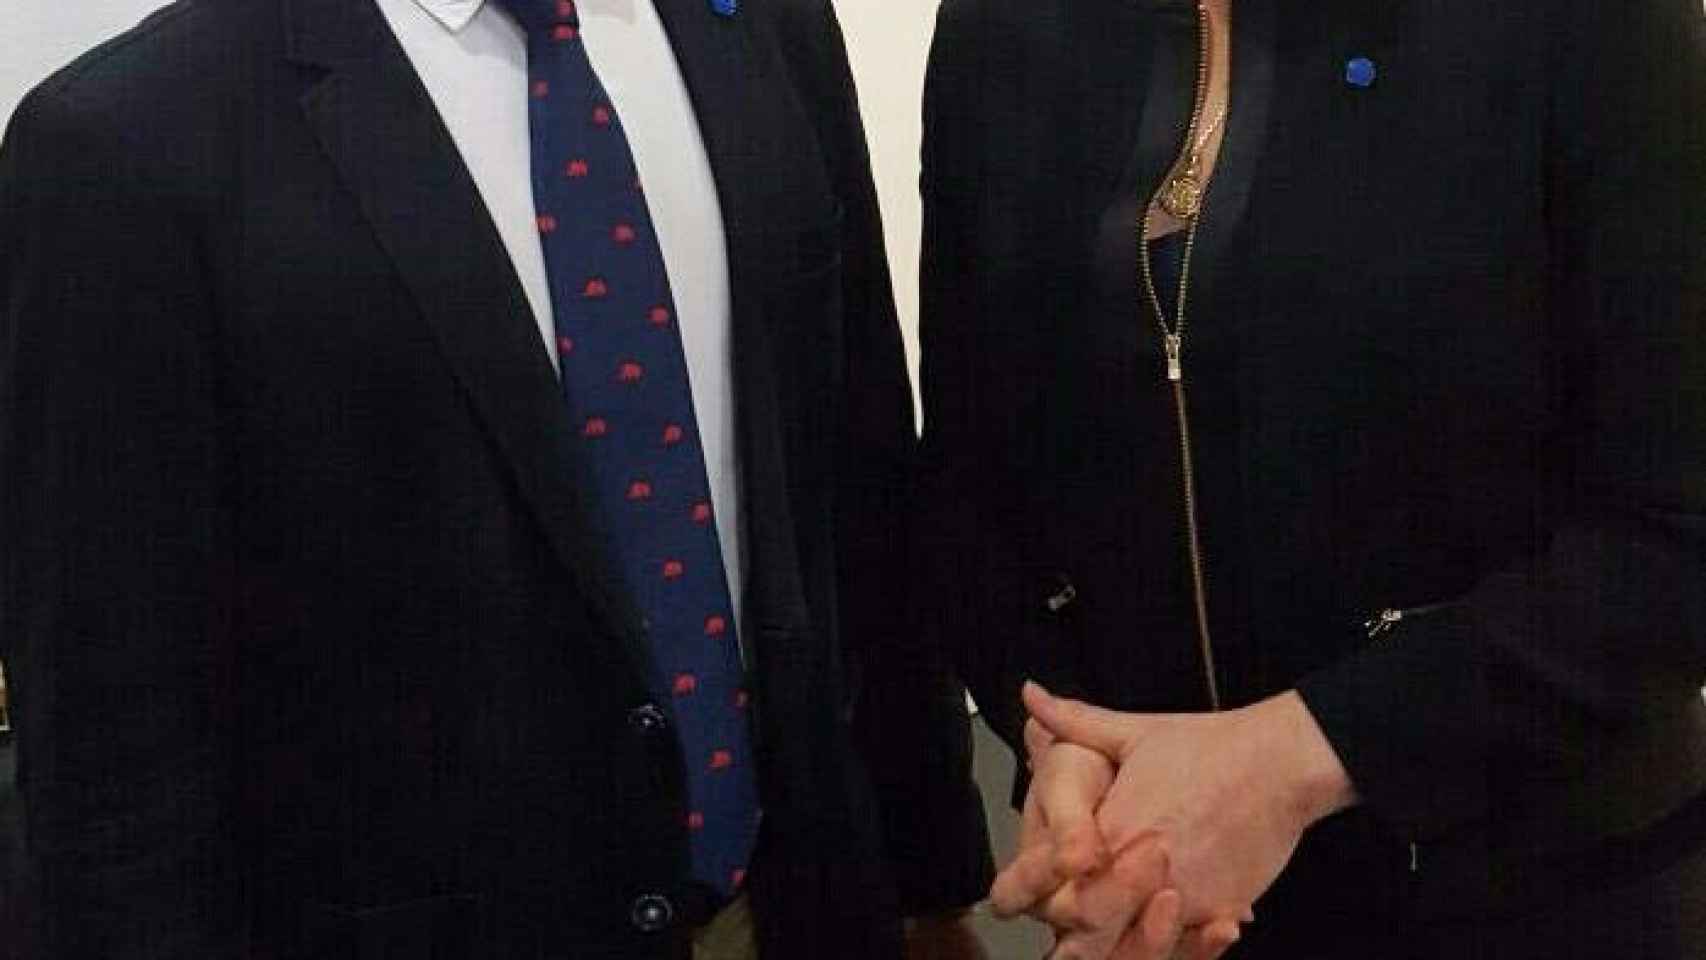 Santiago Abascal y Marine Le Pen en un acto de campaña en las elecciones francesas de 2017.